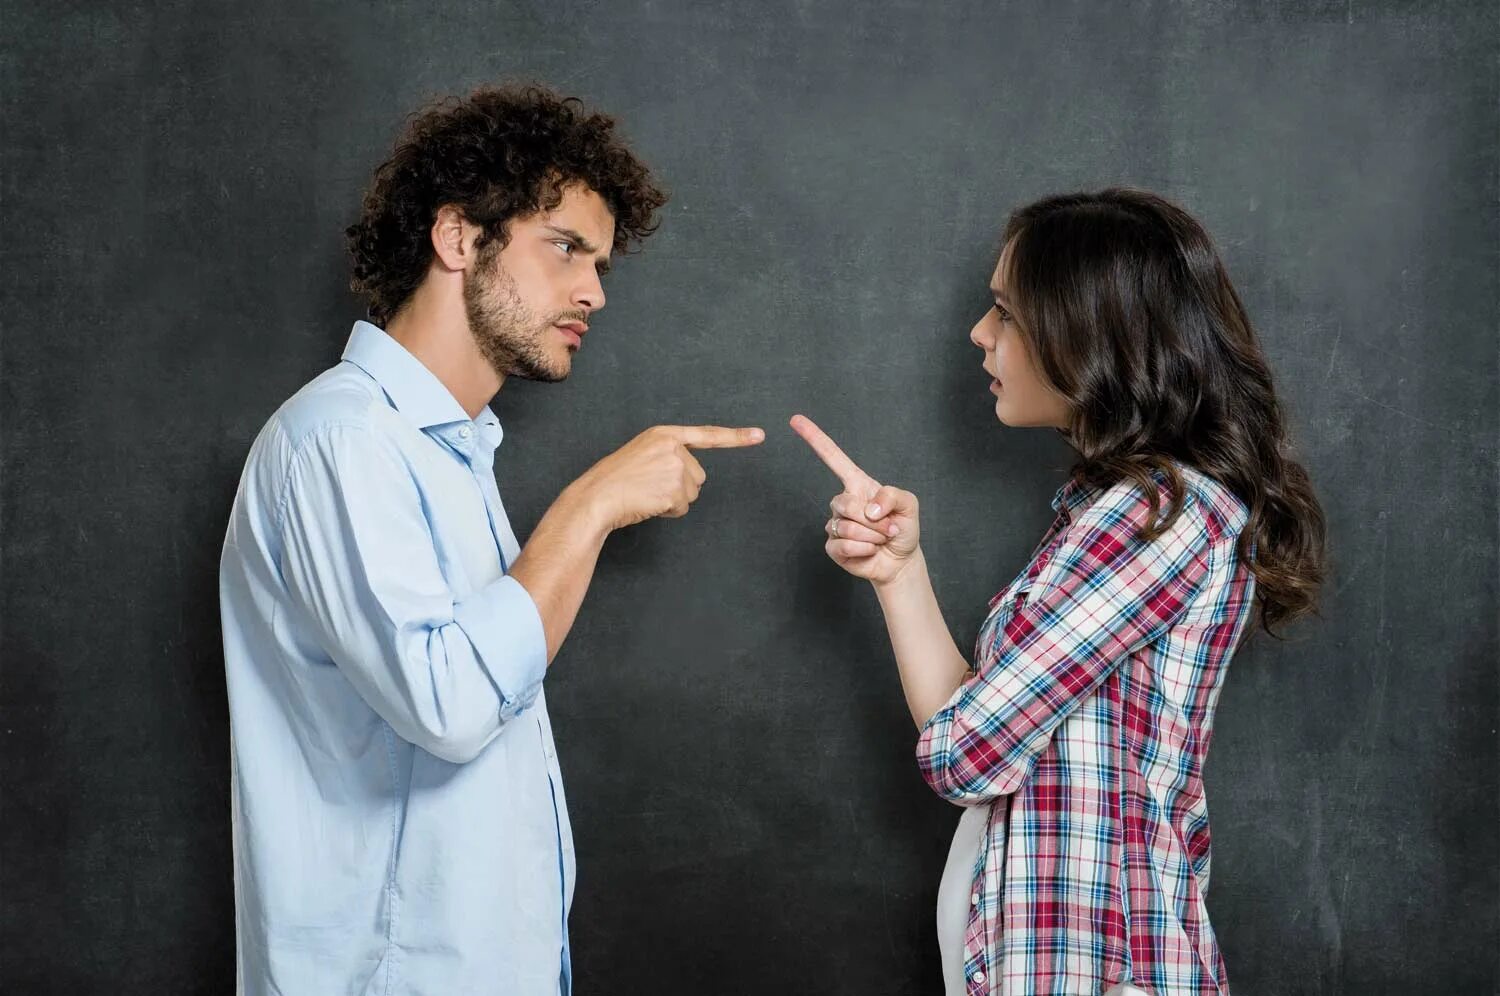 Разногласия. Конфликт. Люди спорят. Мужчина и женщина спорят. Спор между мужчиной и женщиной.